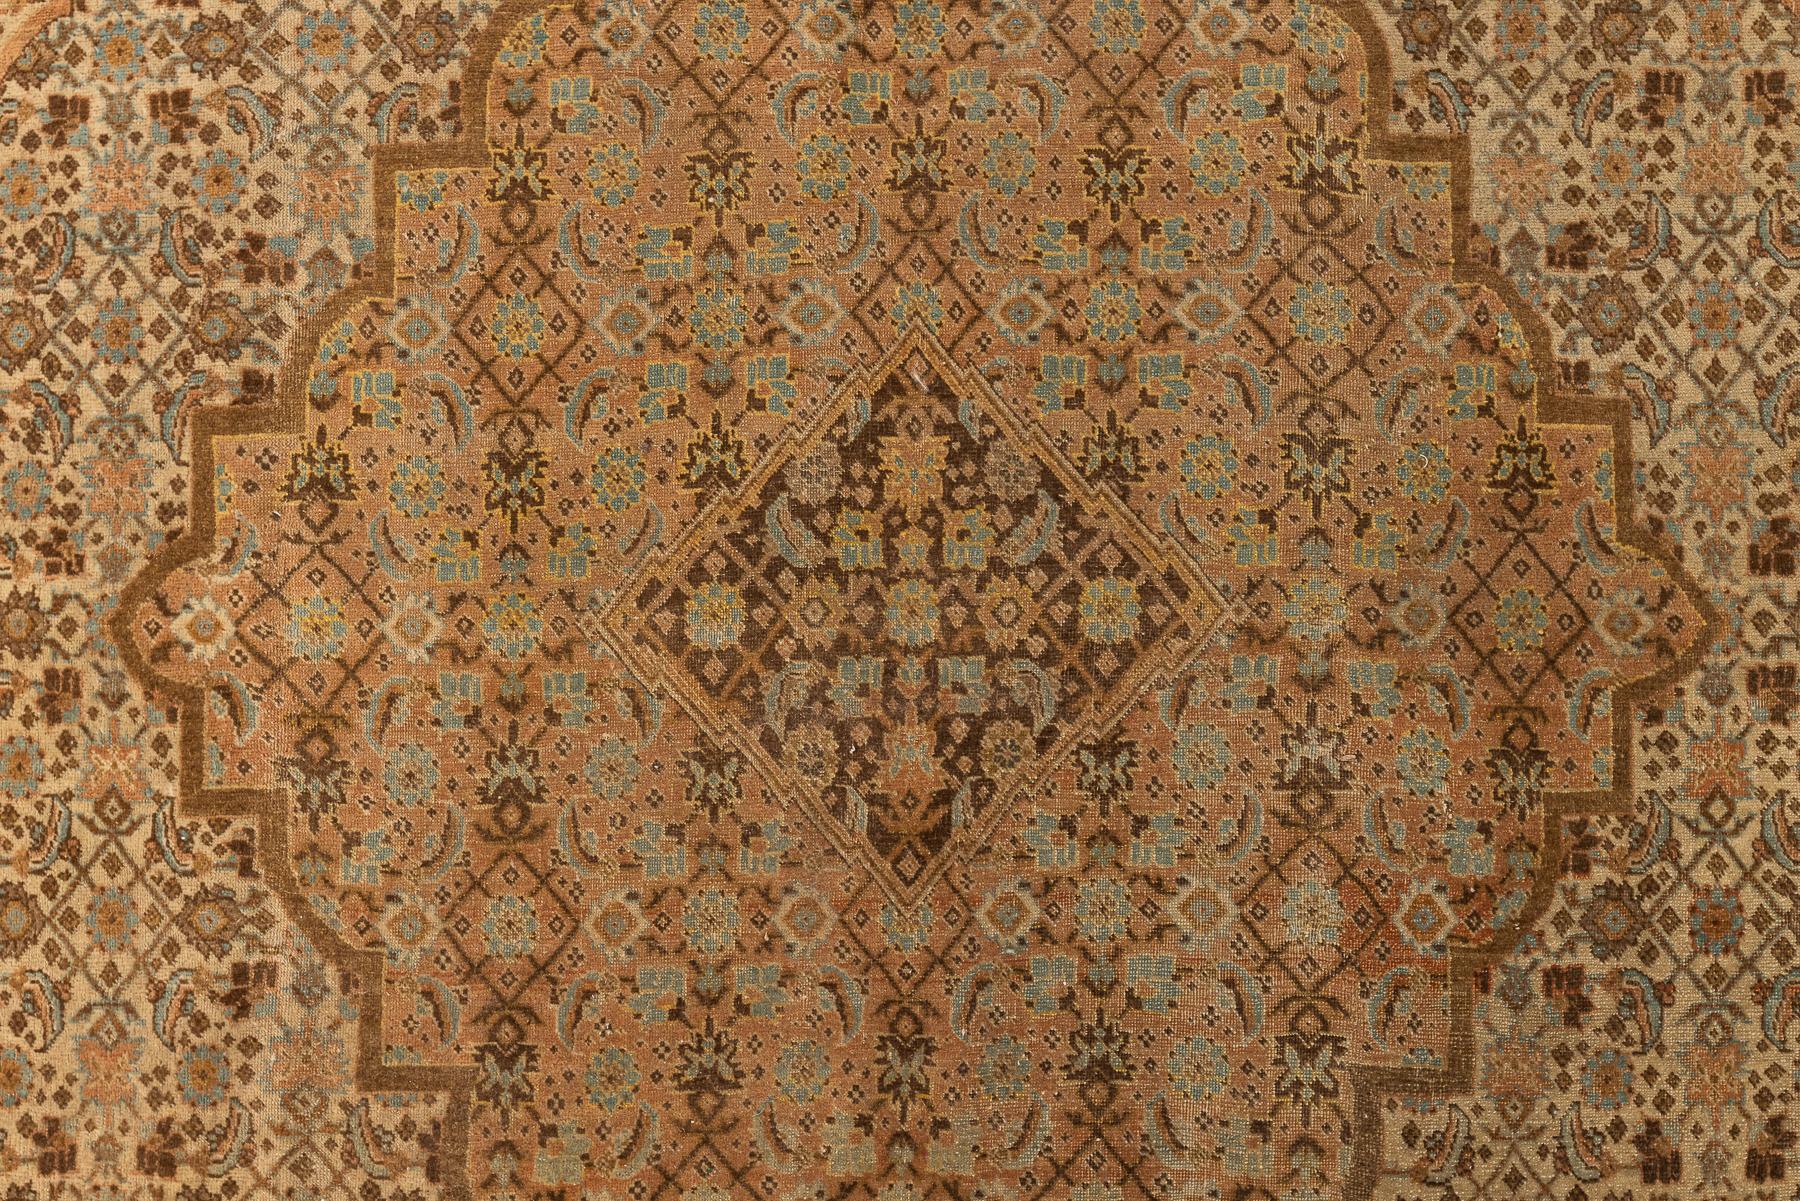 Täbris - Nordwest-Persien

Dies ist ein Teppich aus Täbris, inspiriert von dem Meister Hadschi Jallili. Das Design legt Wert auf subtile Farbabstufungen und präzise Detailarbeit. Anstelle des bei Perserteppichen meist vorherrschenden Medaillons